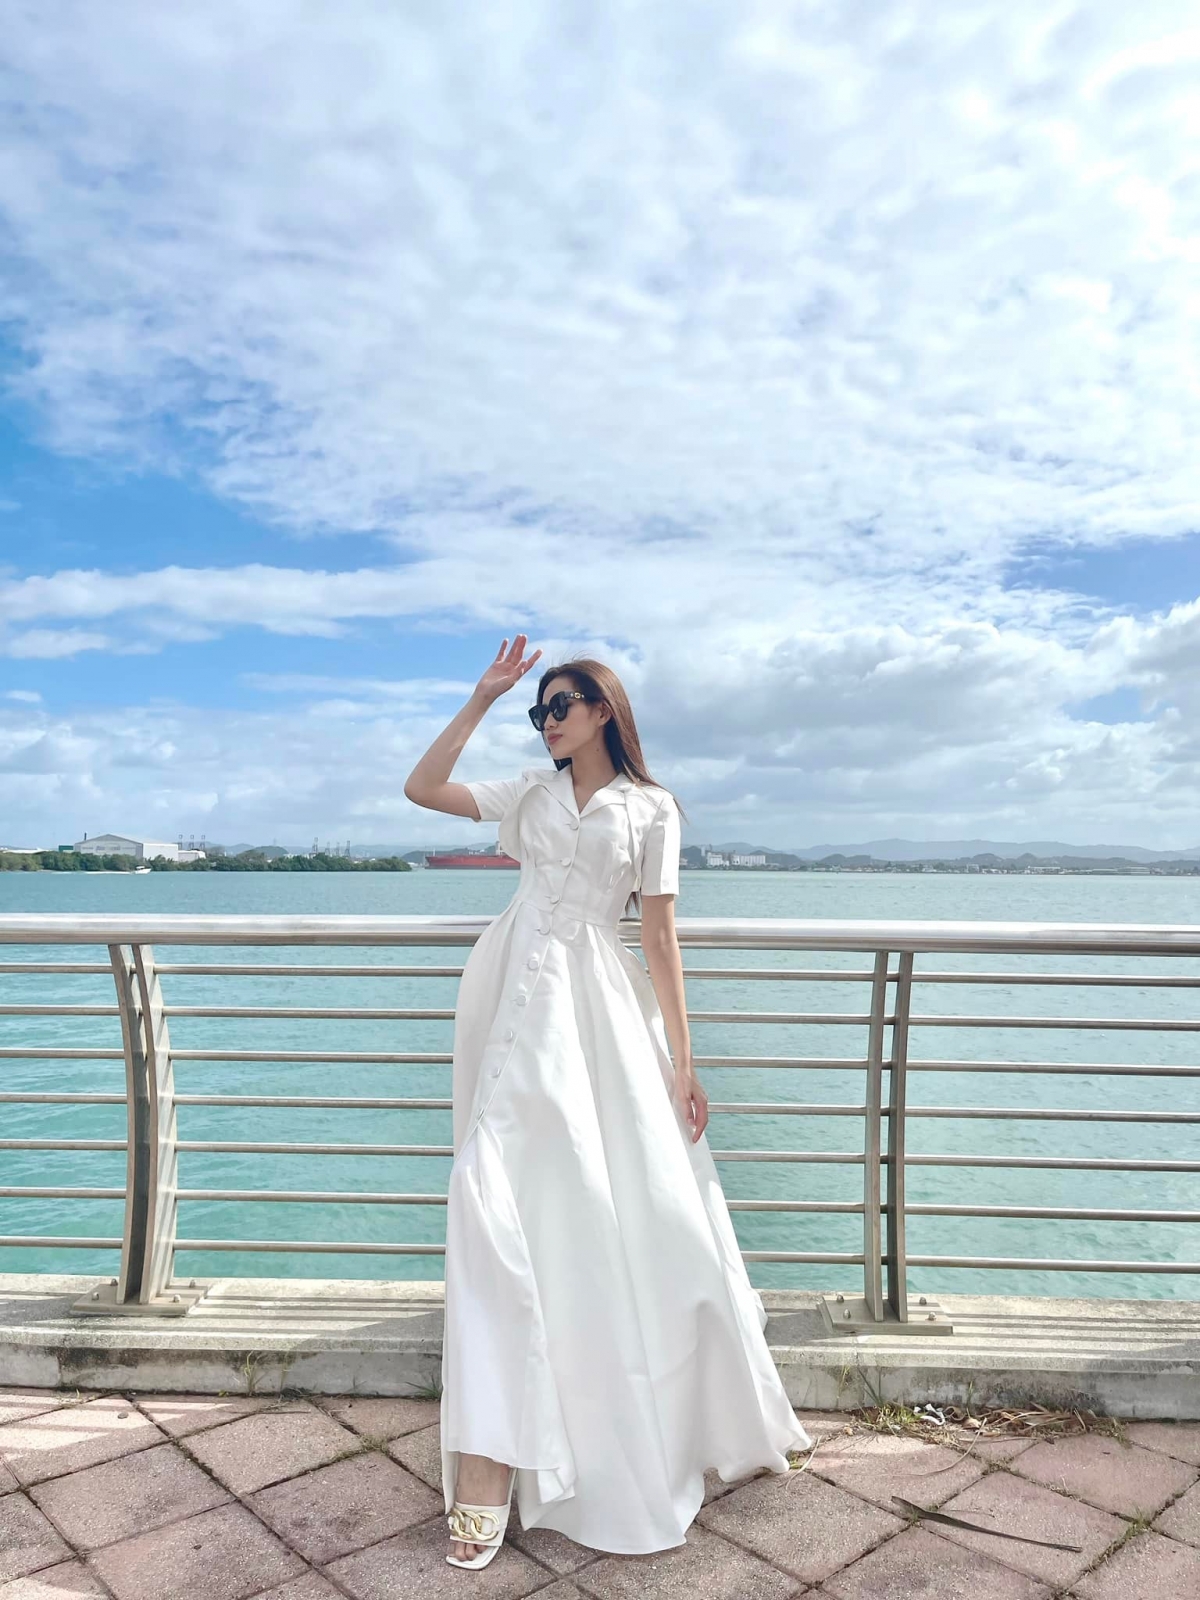 Hoa hậu Đỗ Thị Hà hóa nàng thơ yêu kiều với sắc trắng tinh khôi trước khi về nước - Ảnh 5.